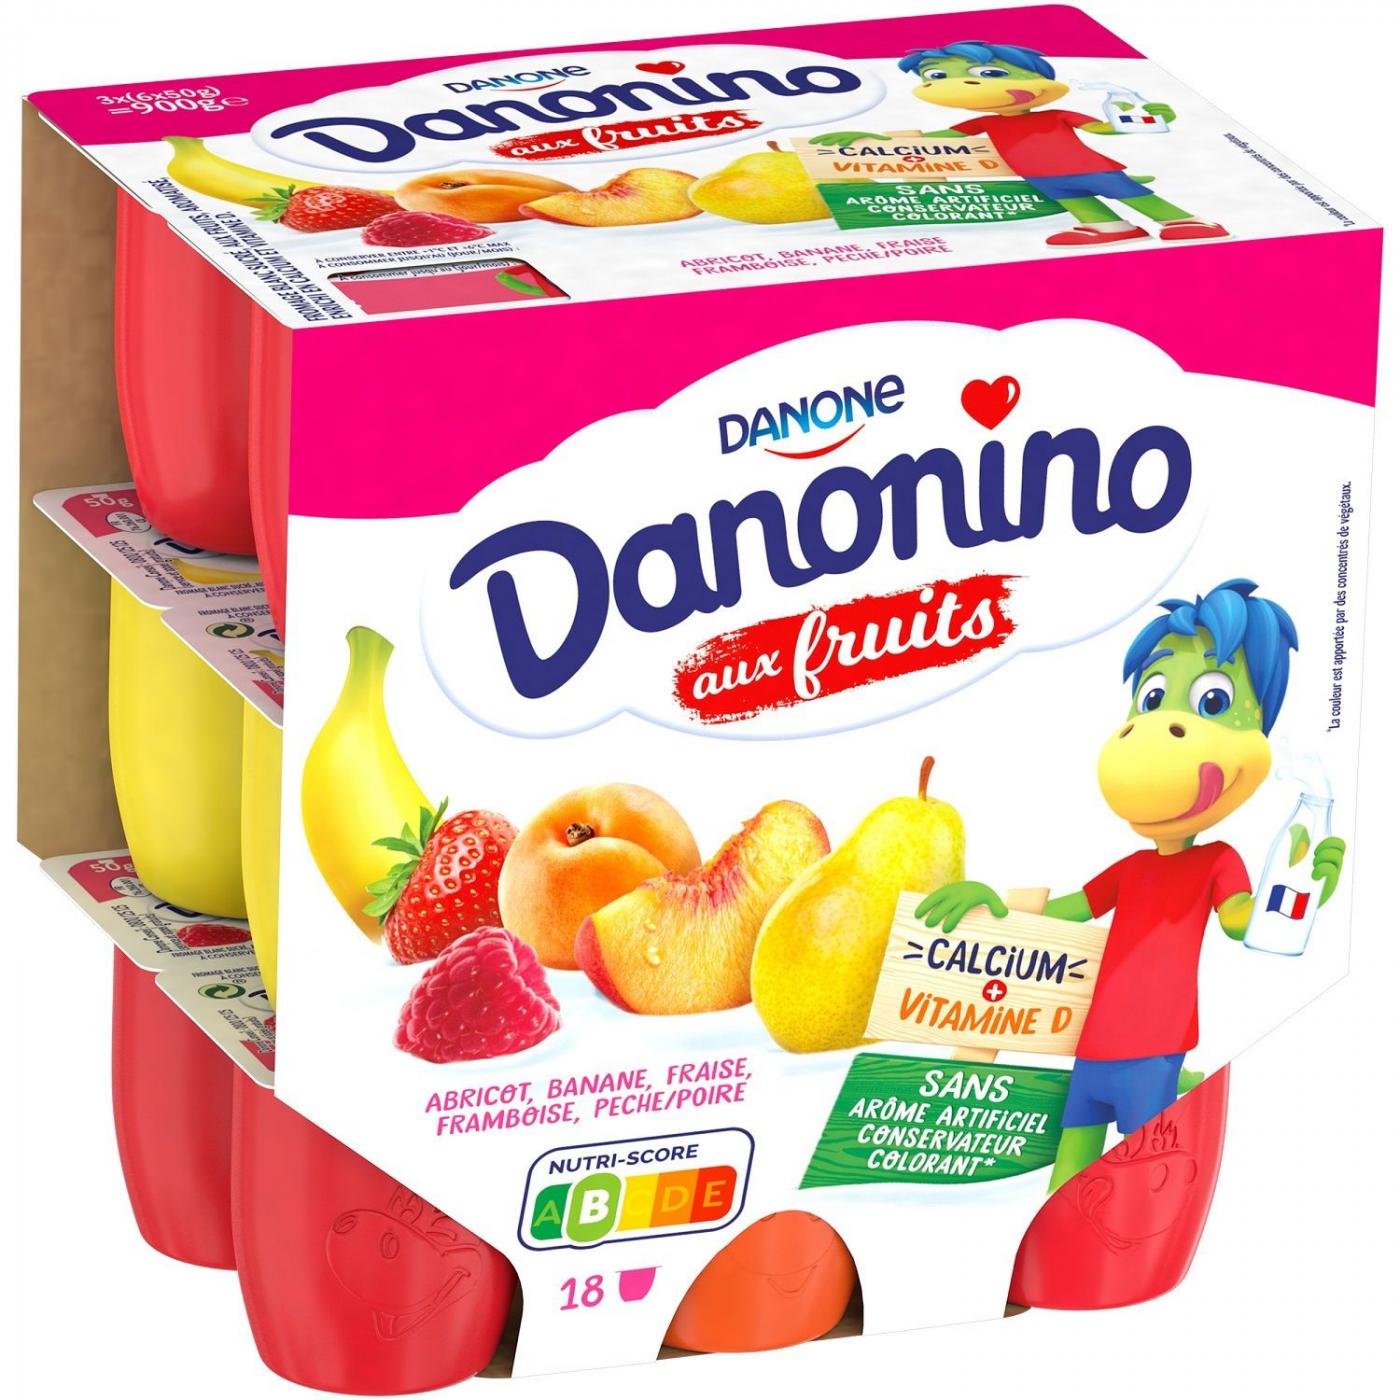 Damonino Raspberry Danone 4 x 60g